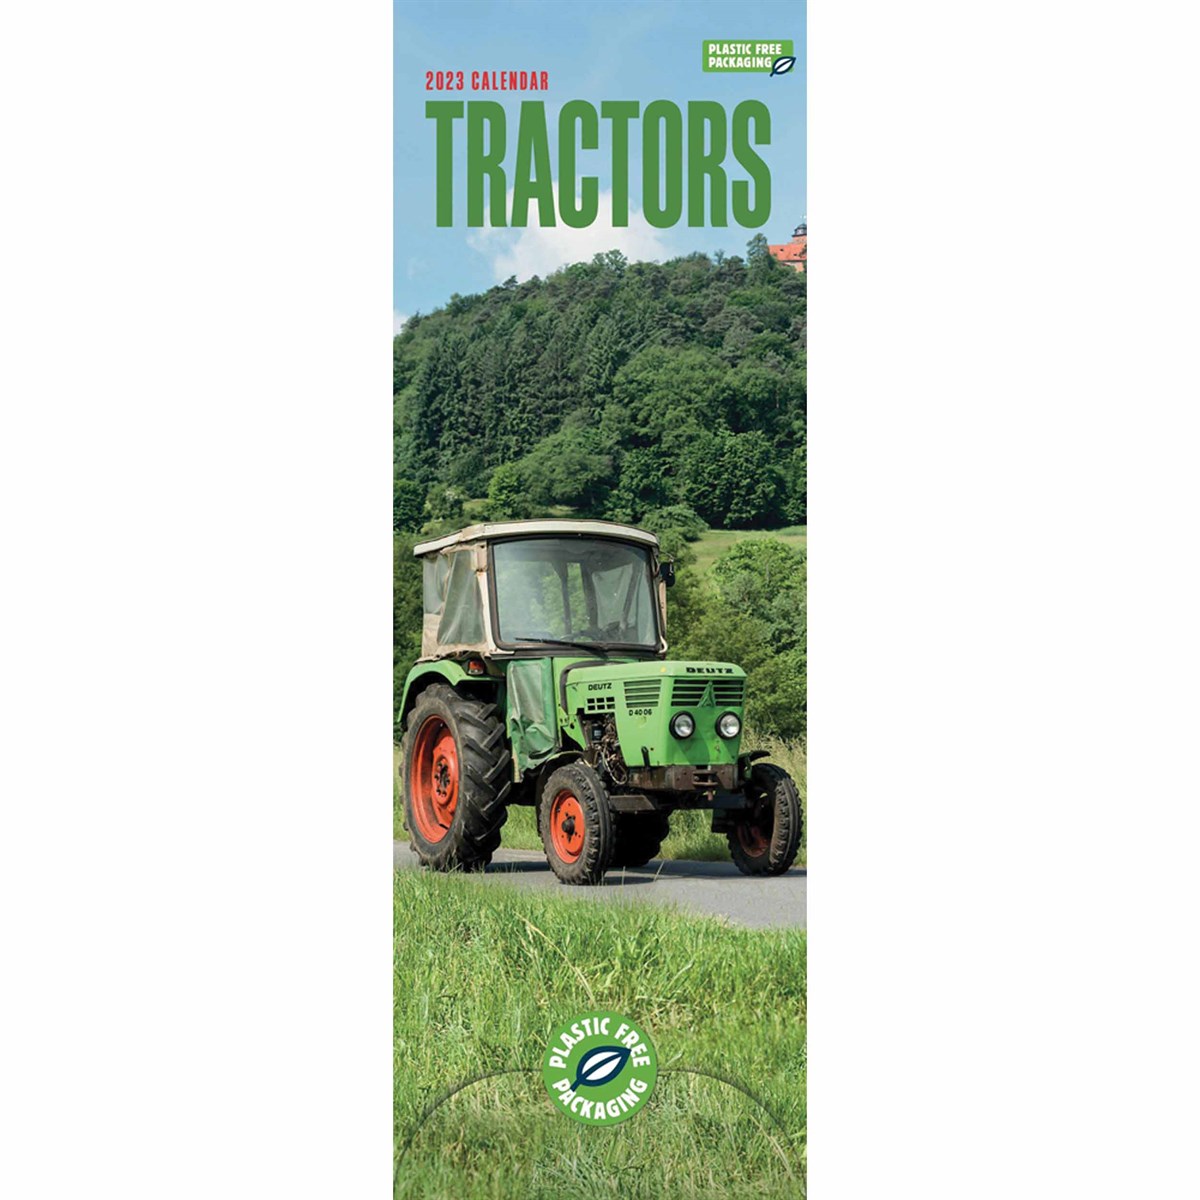 Tractors Slim 2023 Calendars